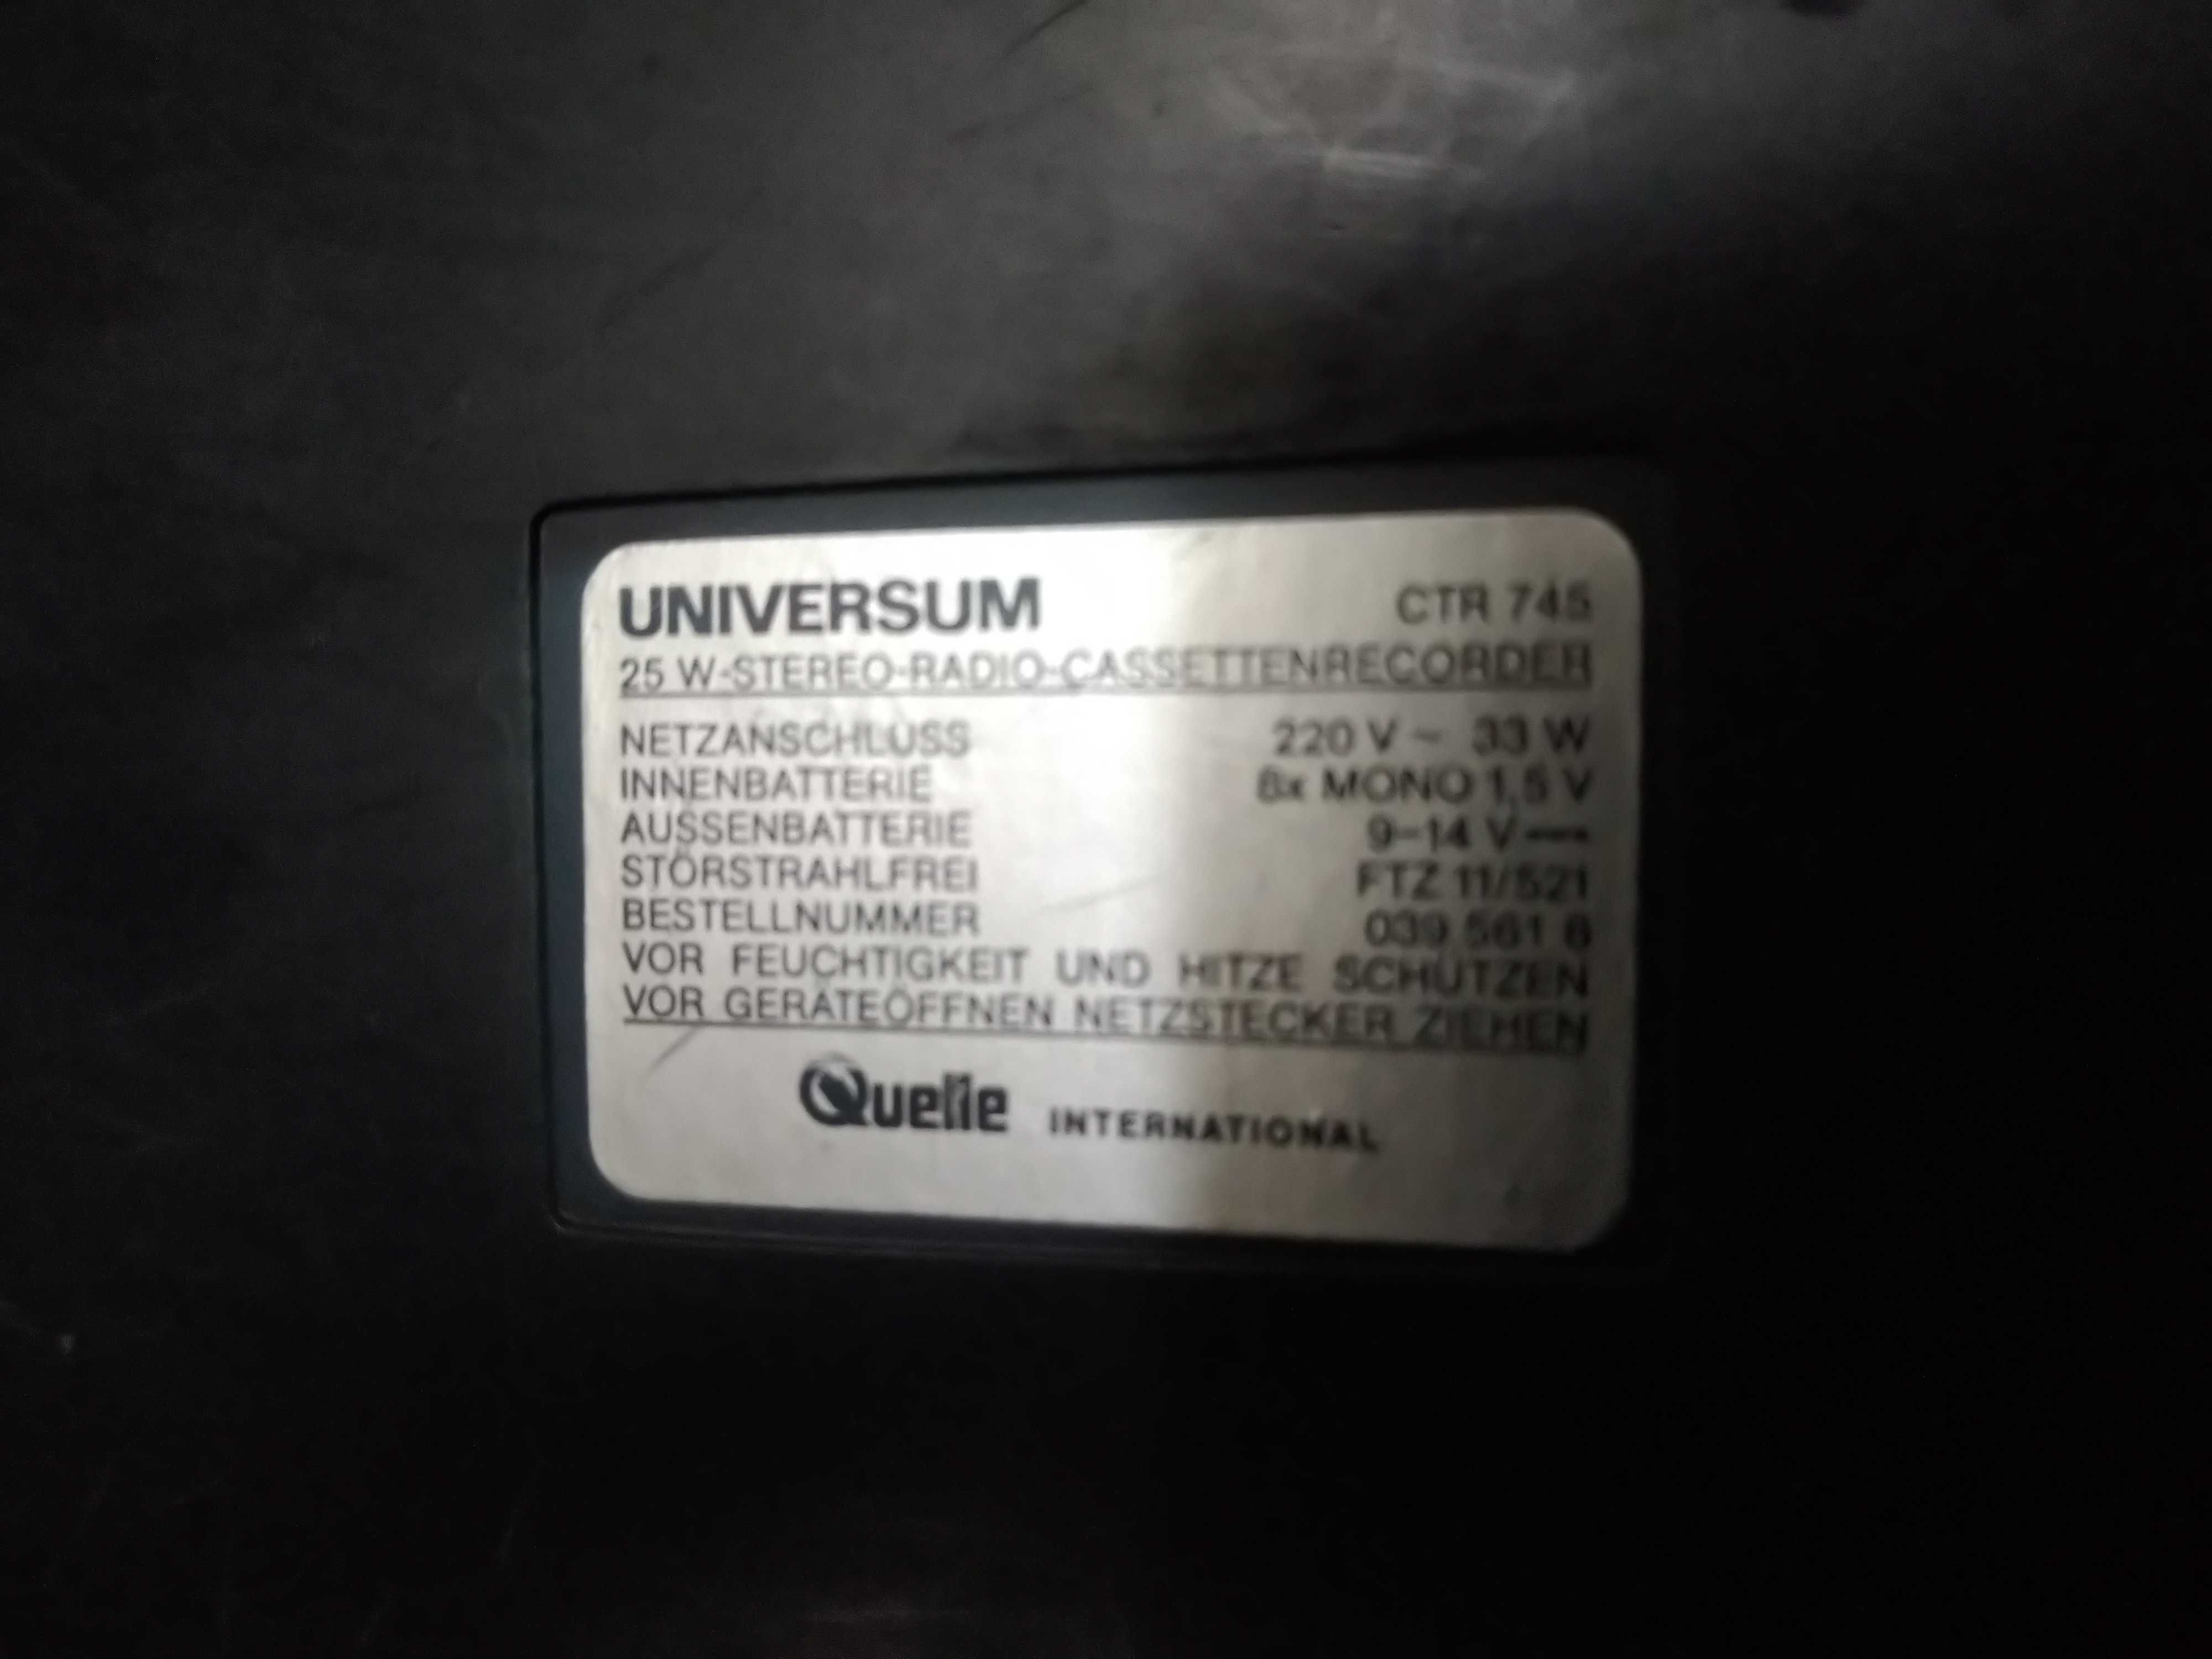 Universum CTR 745 Radio Cassette